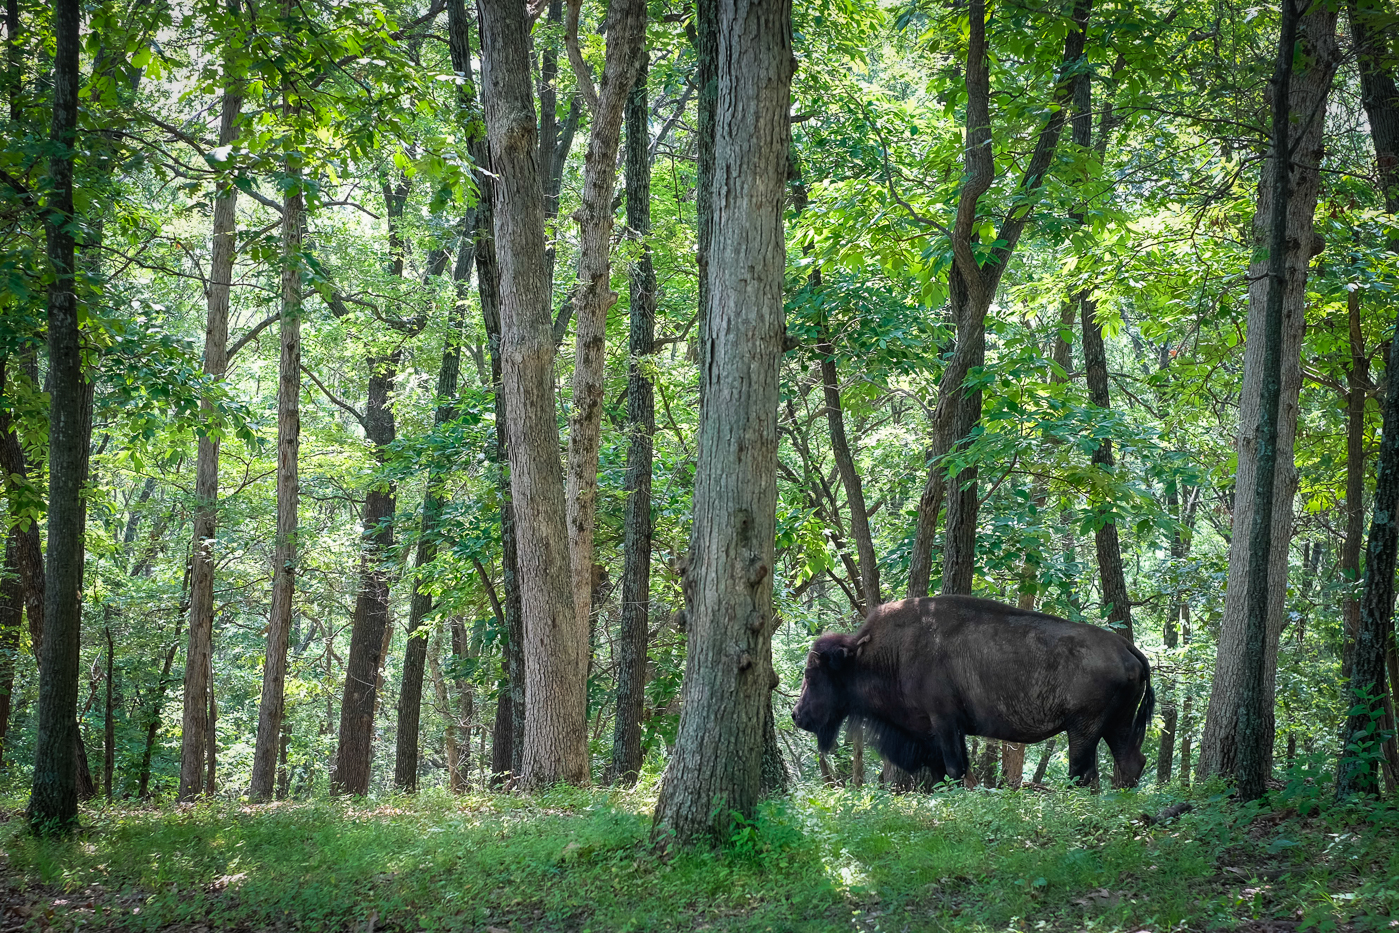 Bison at Lone Elk Park